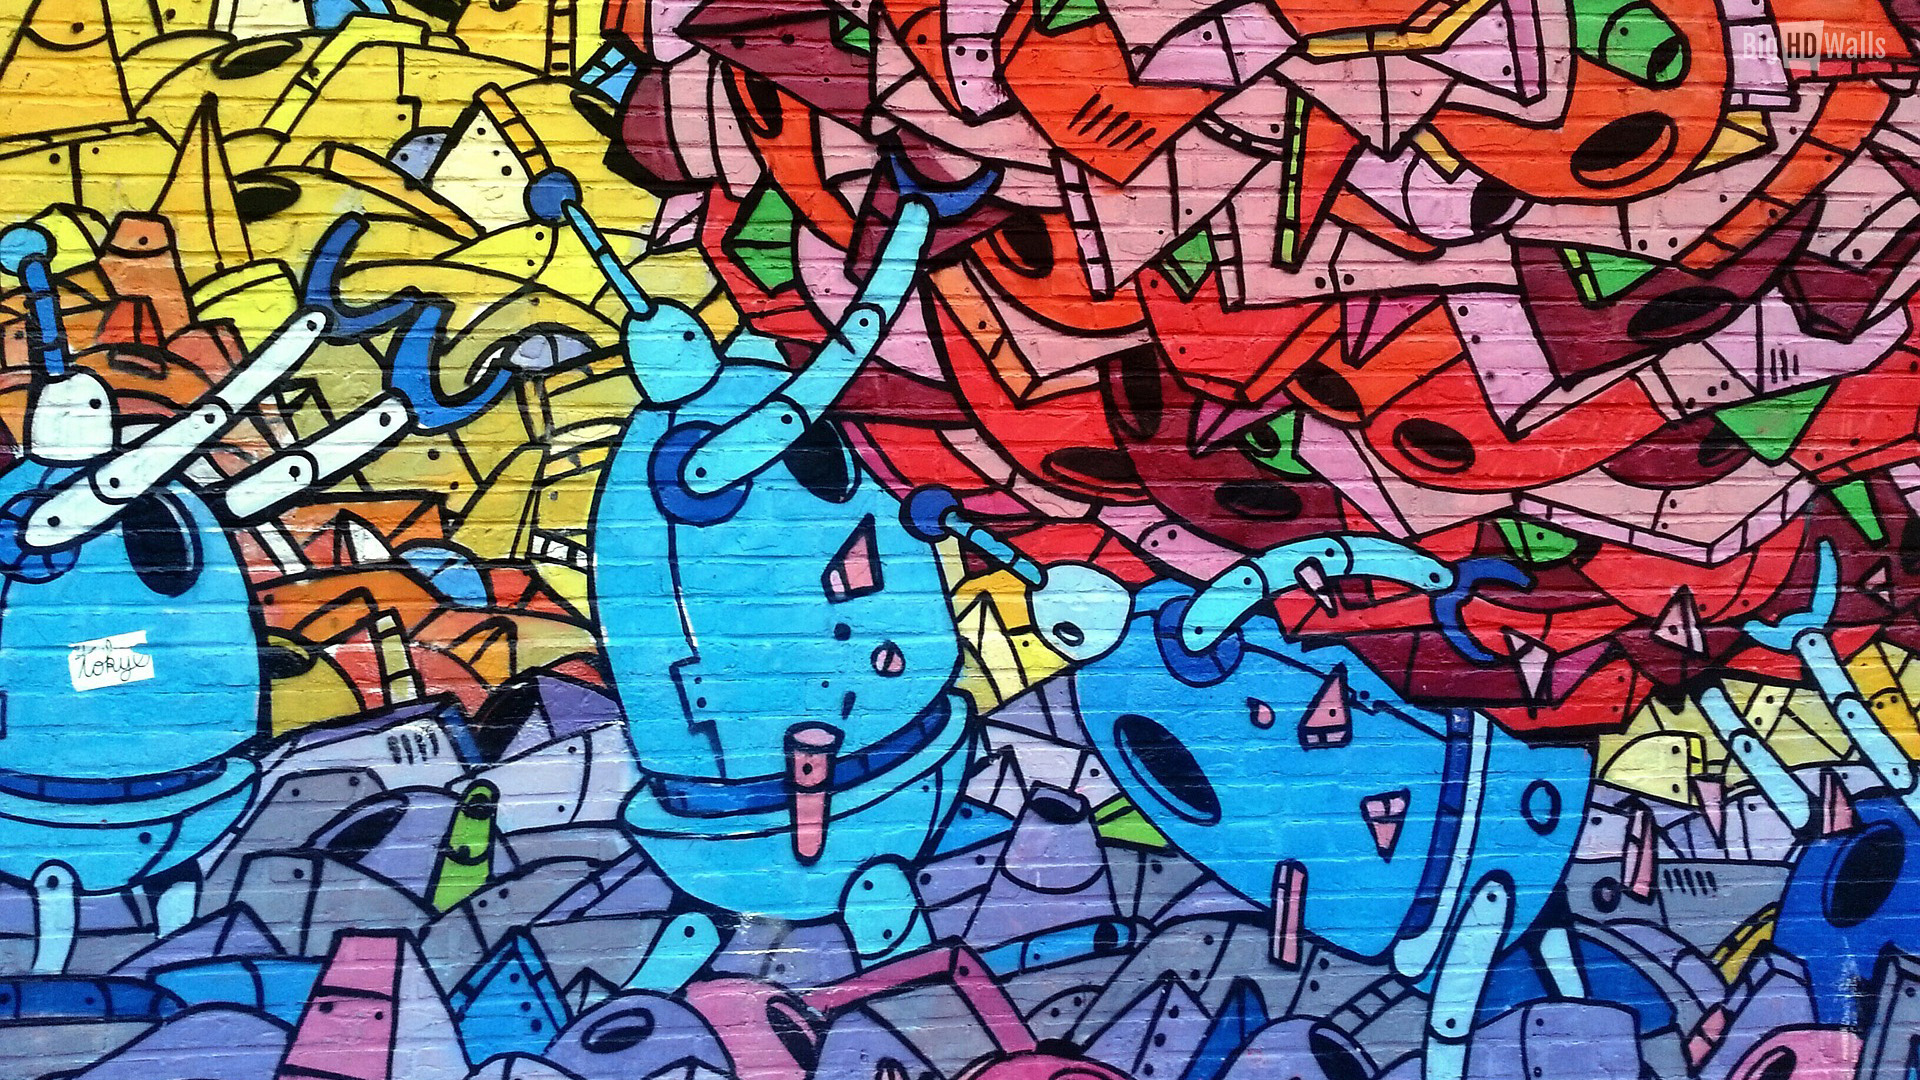  Street art Graffiti Wallpapers BigHDWalls